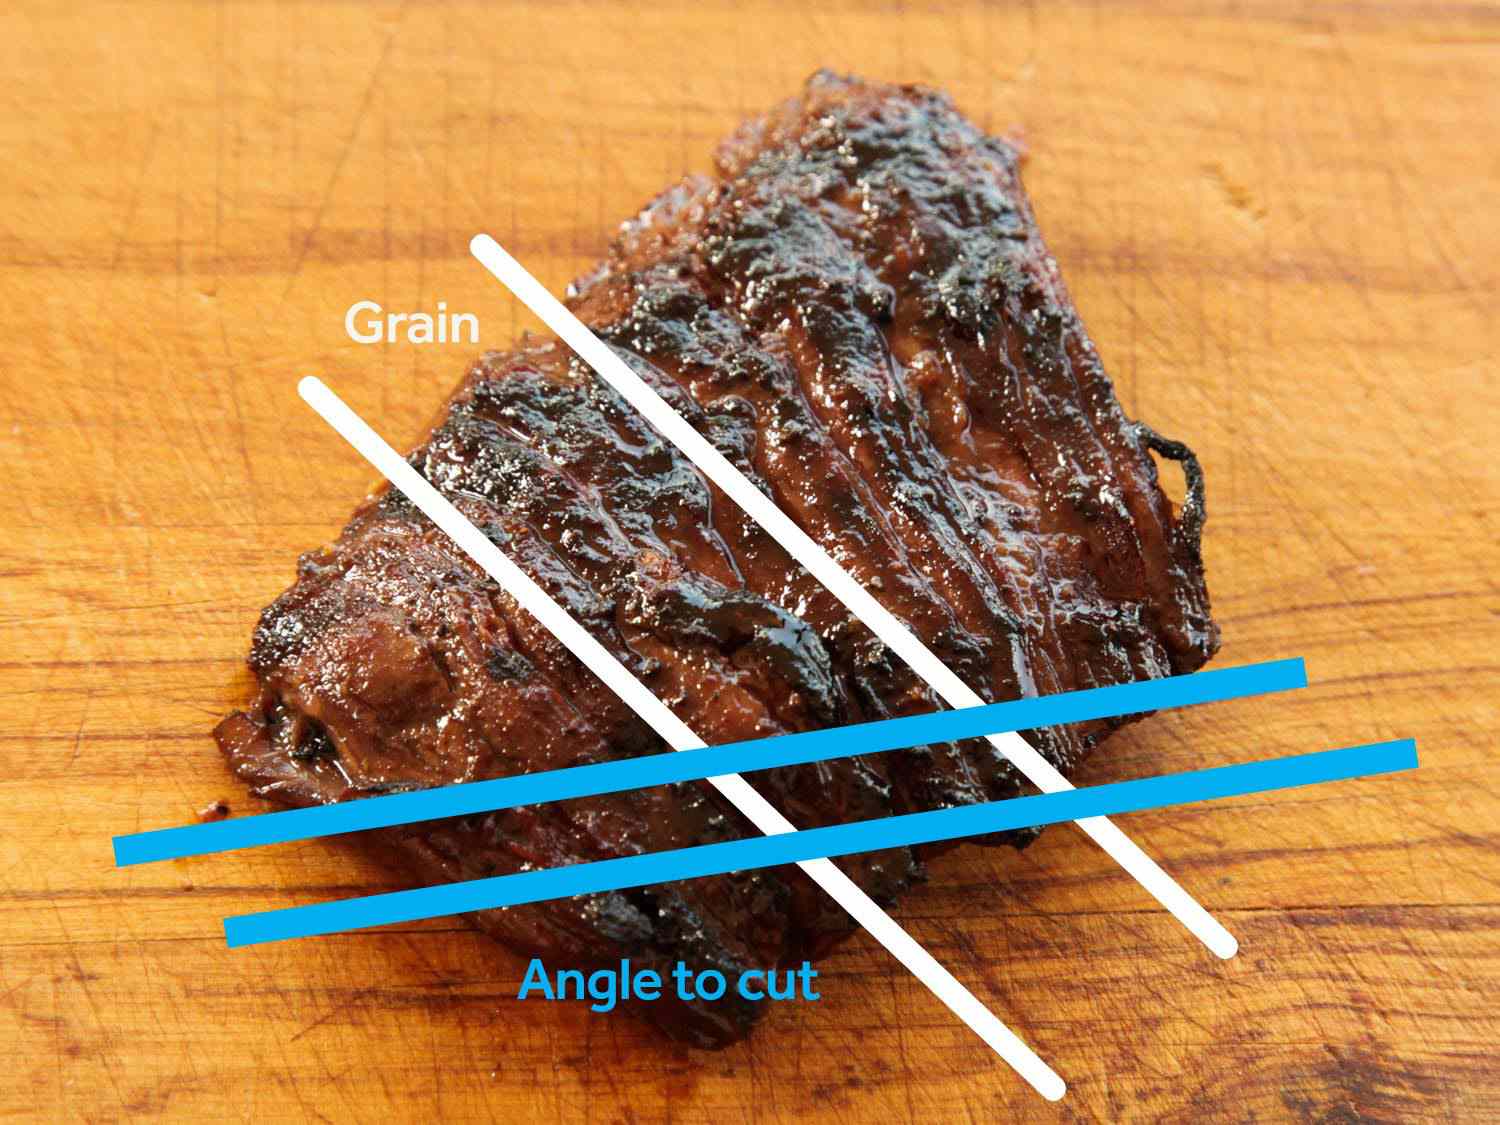 切肉排:一块有线条的牛排，上面的线条指示着牛排的纹路，以及切成45度角以获得最大的嫩度